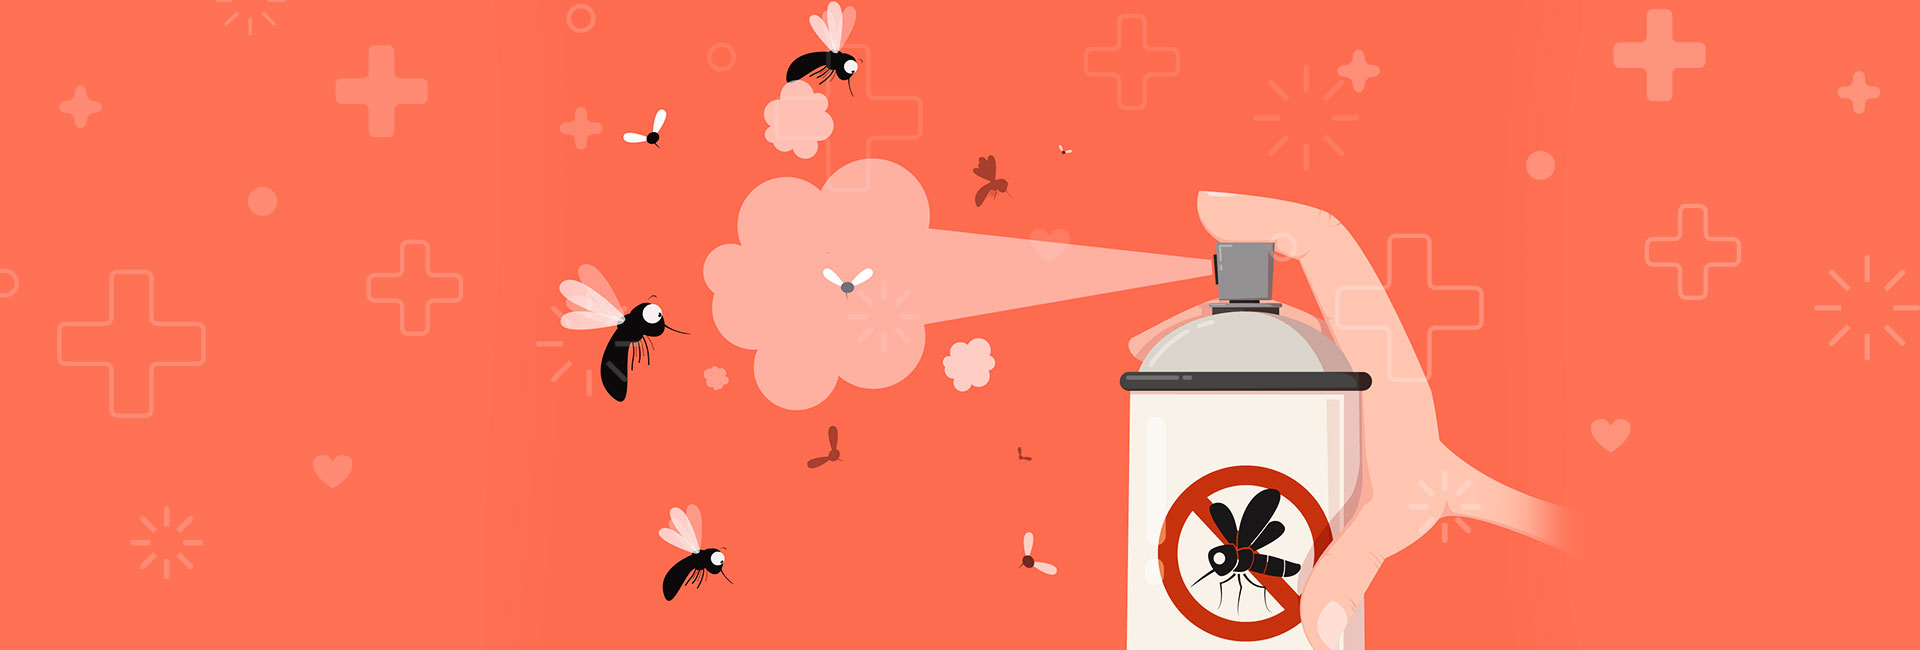 repelente, una medida de precaución contra el dengue